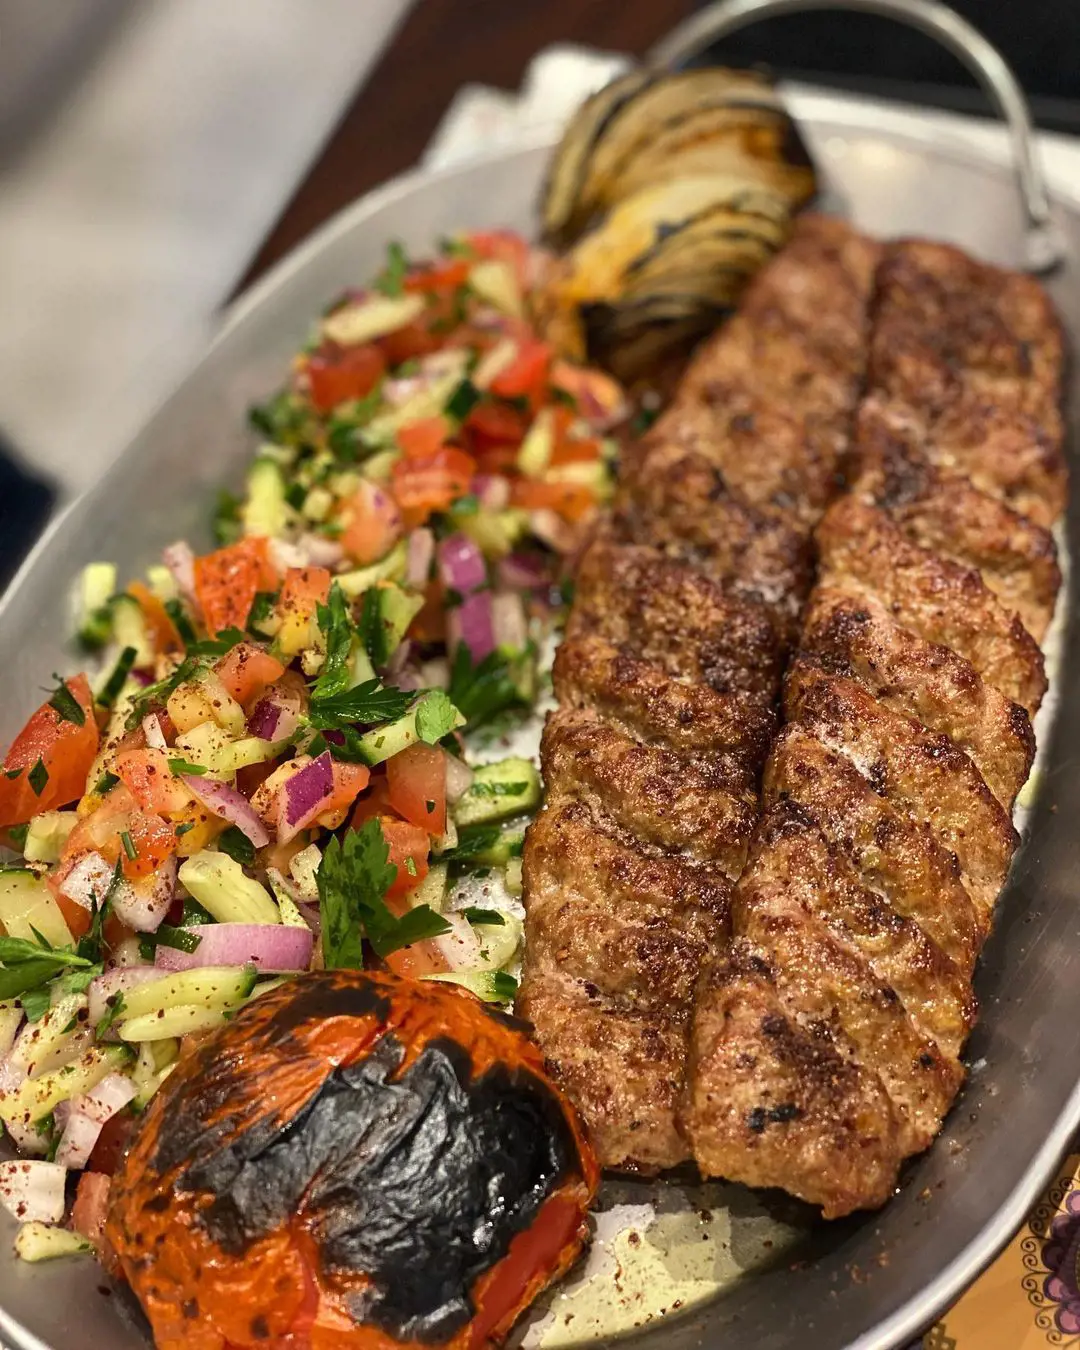 Koobideh with shirazi salad